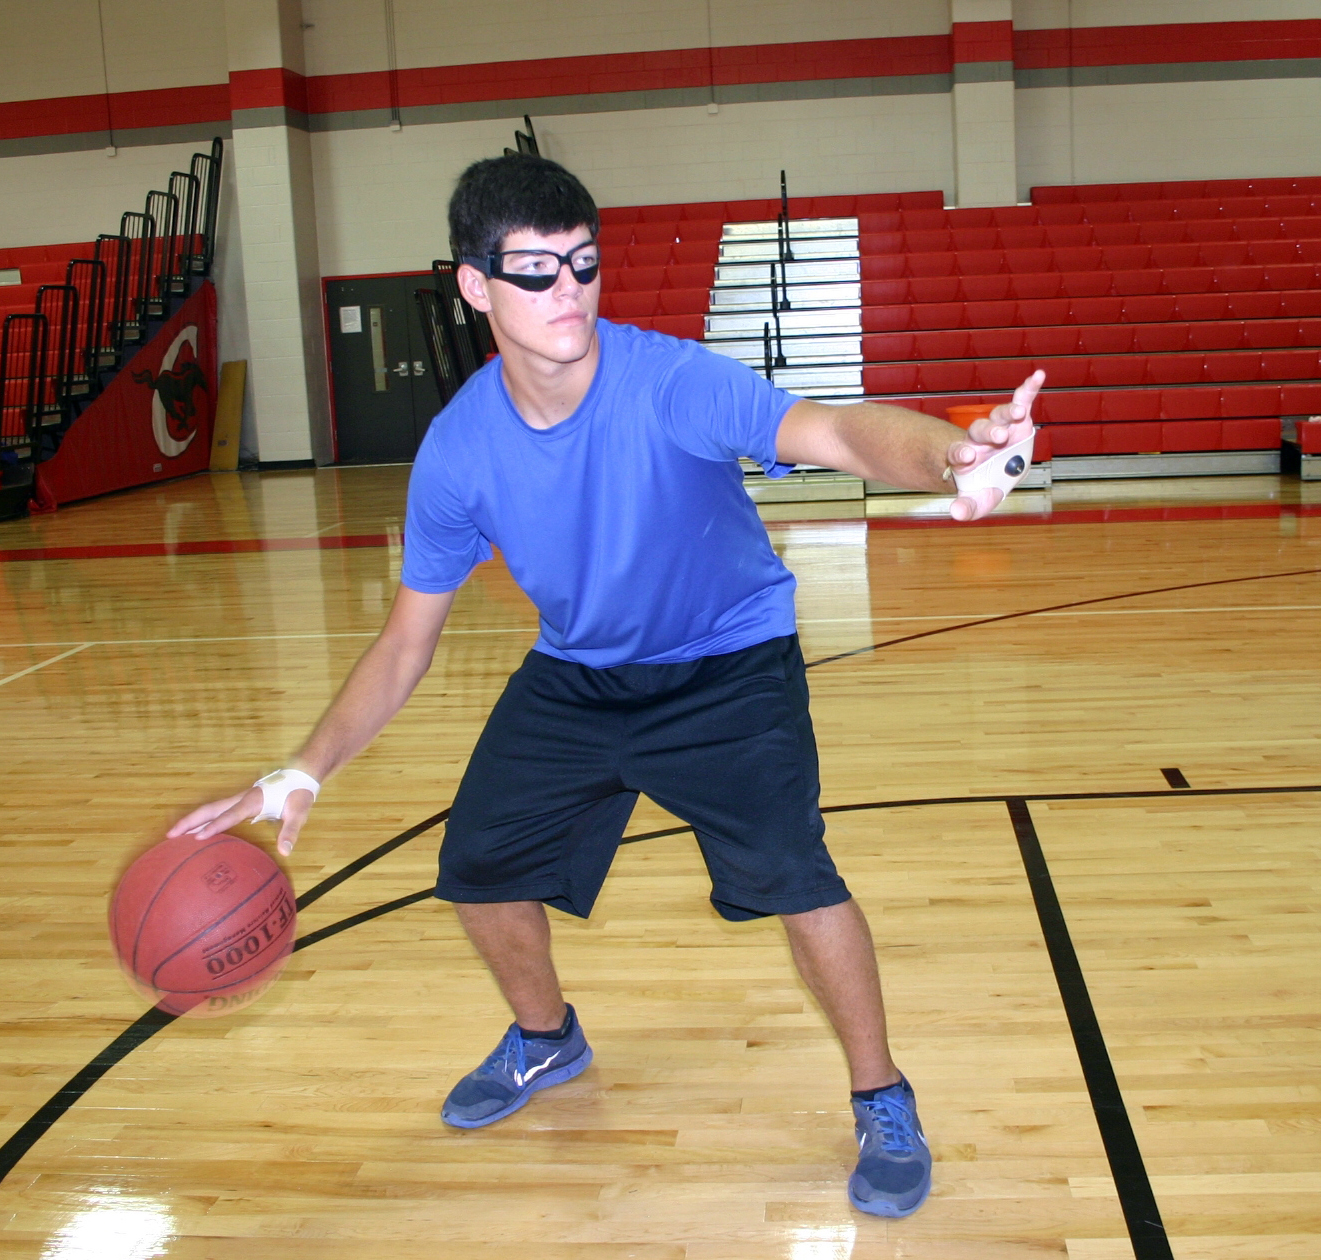 VOOYE Durable basketball dribbling Dribble Specs occhiali occhiali basket abilità formazione aiuto per i bambini oltre 6 